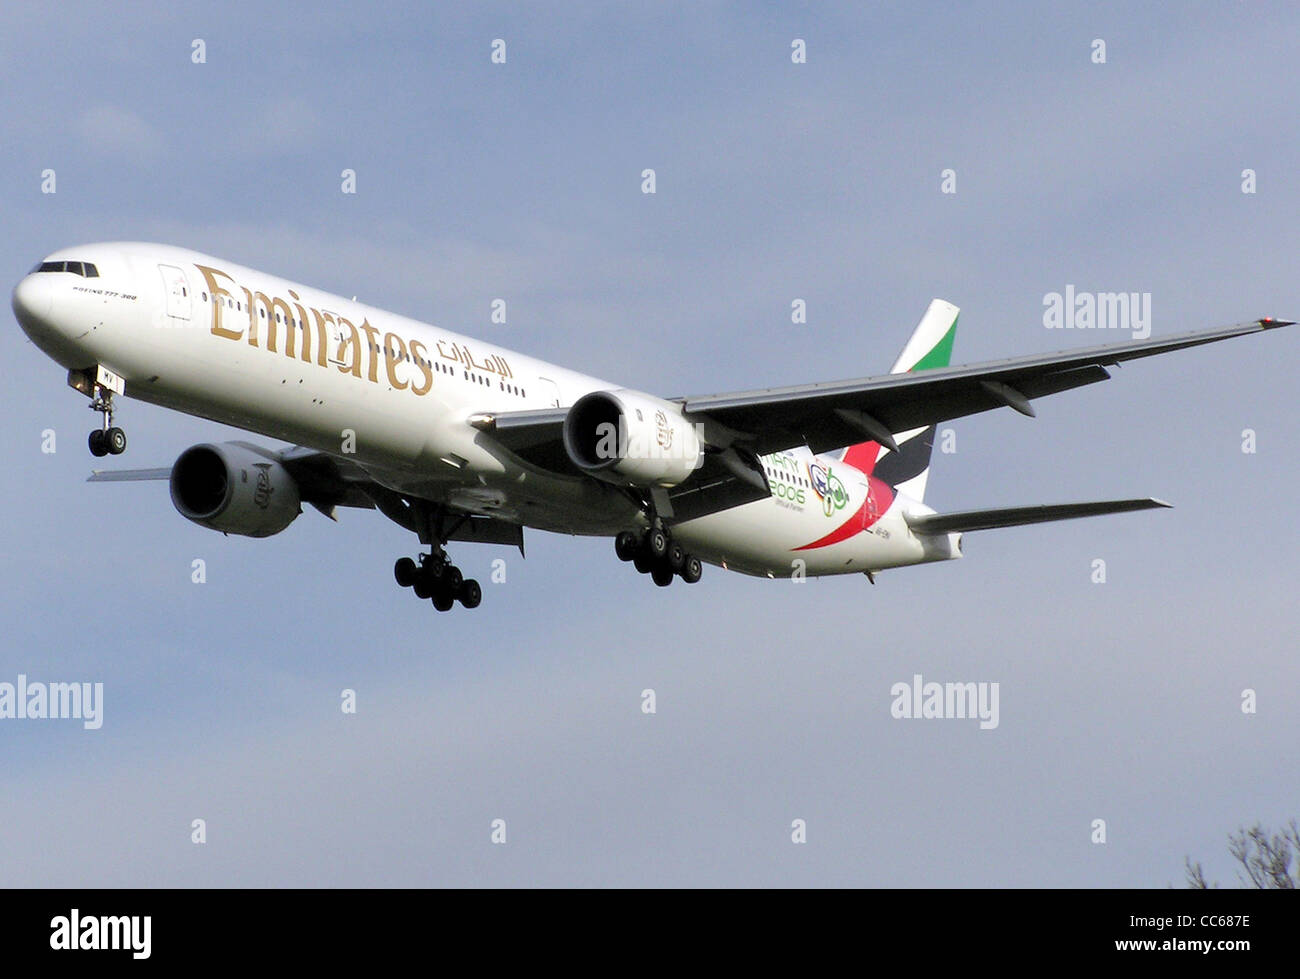 Emirates Boeing 777-300 (A6-EMV) landet auf dem Flughafen London Heathrow, England. Stockfoto